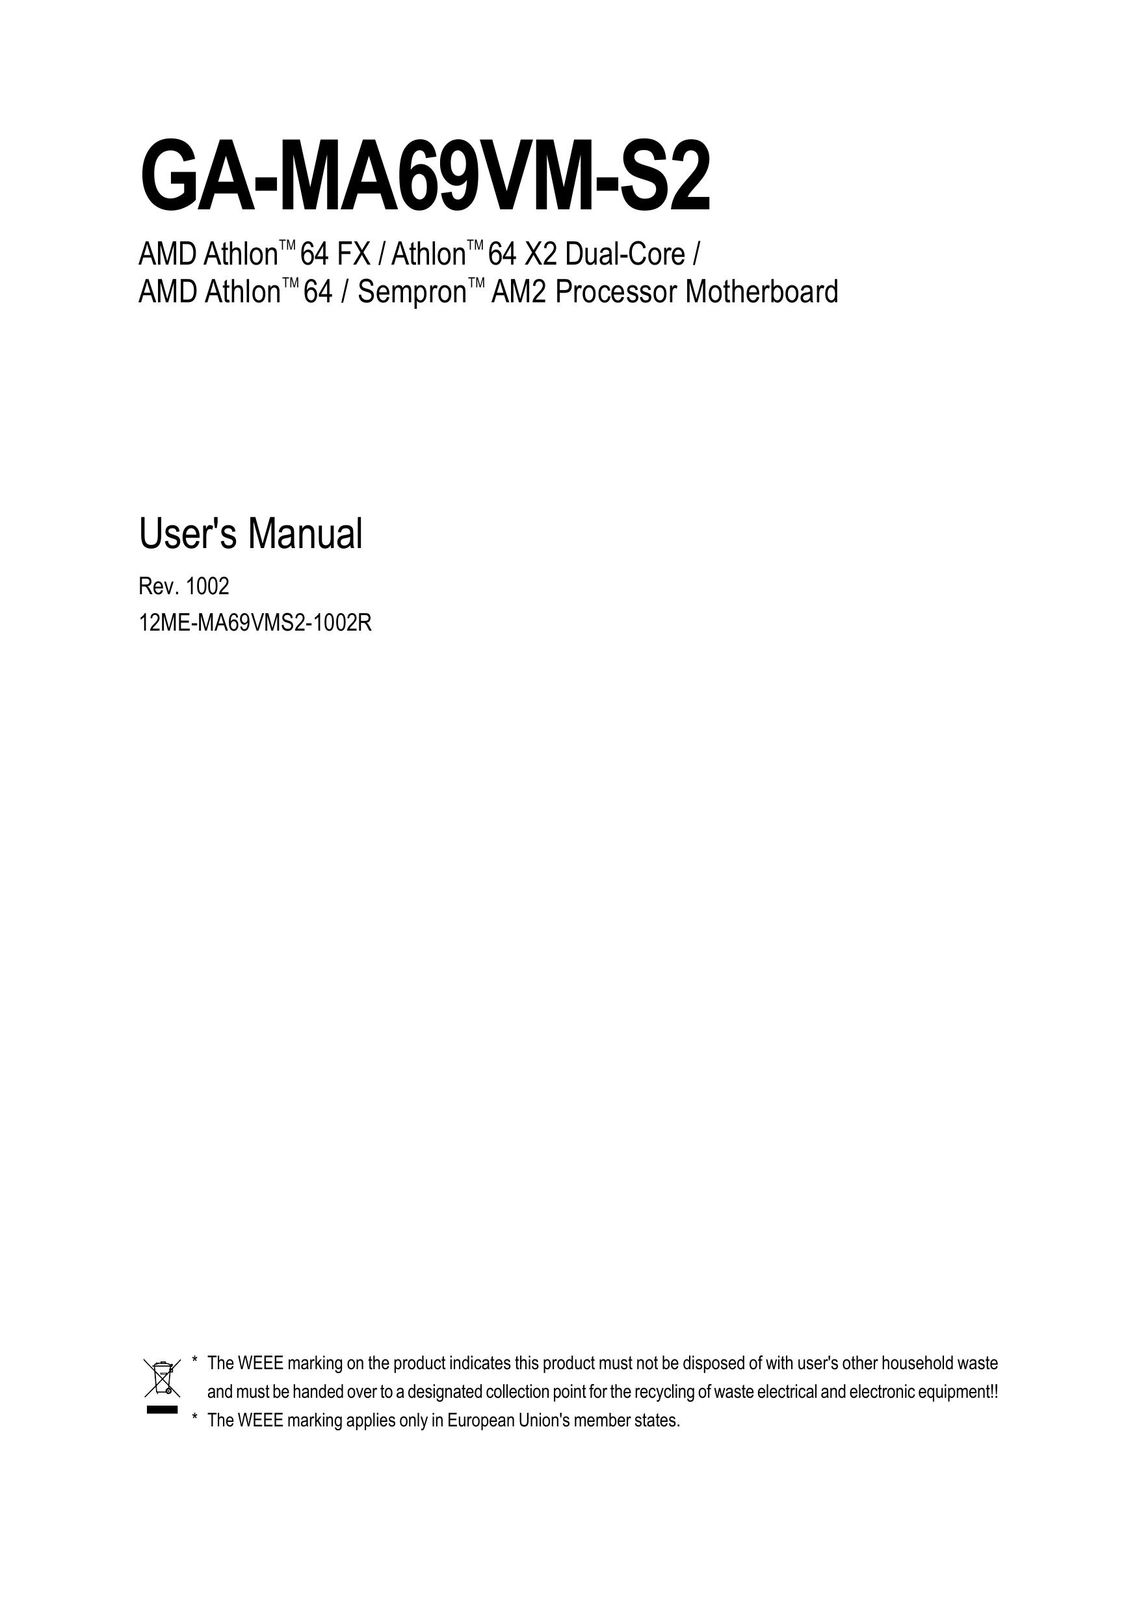 AMD GA-MA69VM-S2 Computer Hardware User Manual